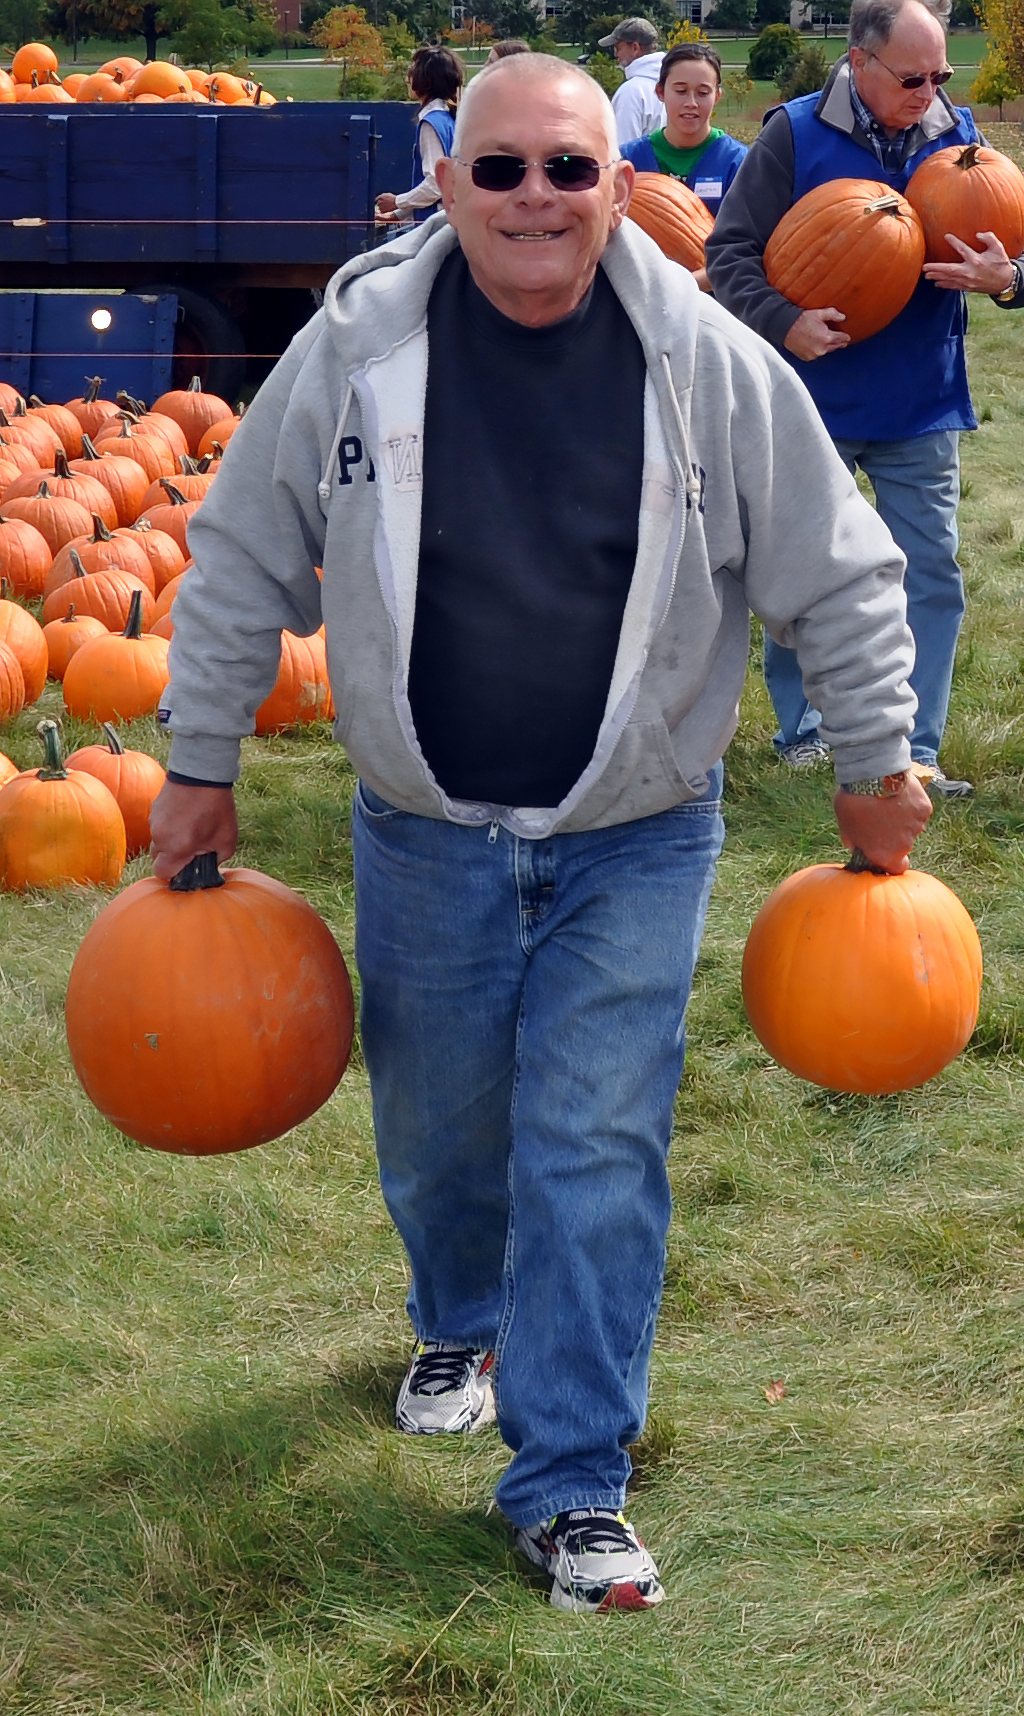 adult volunteer carries two pumpkins